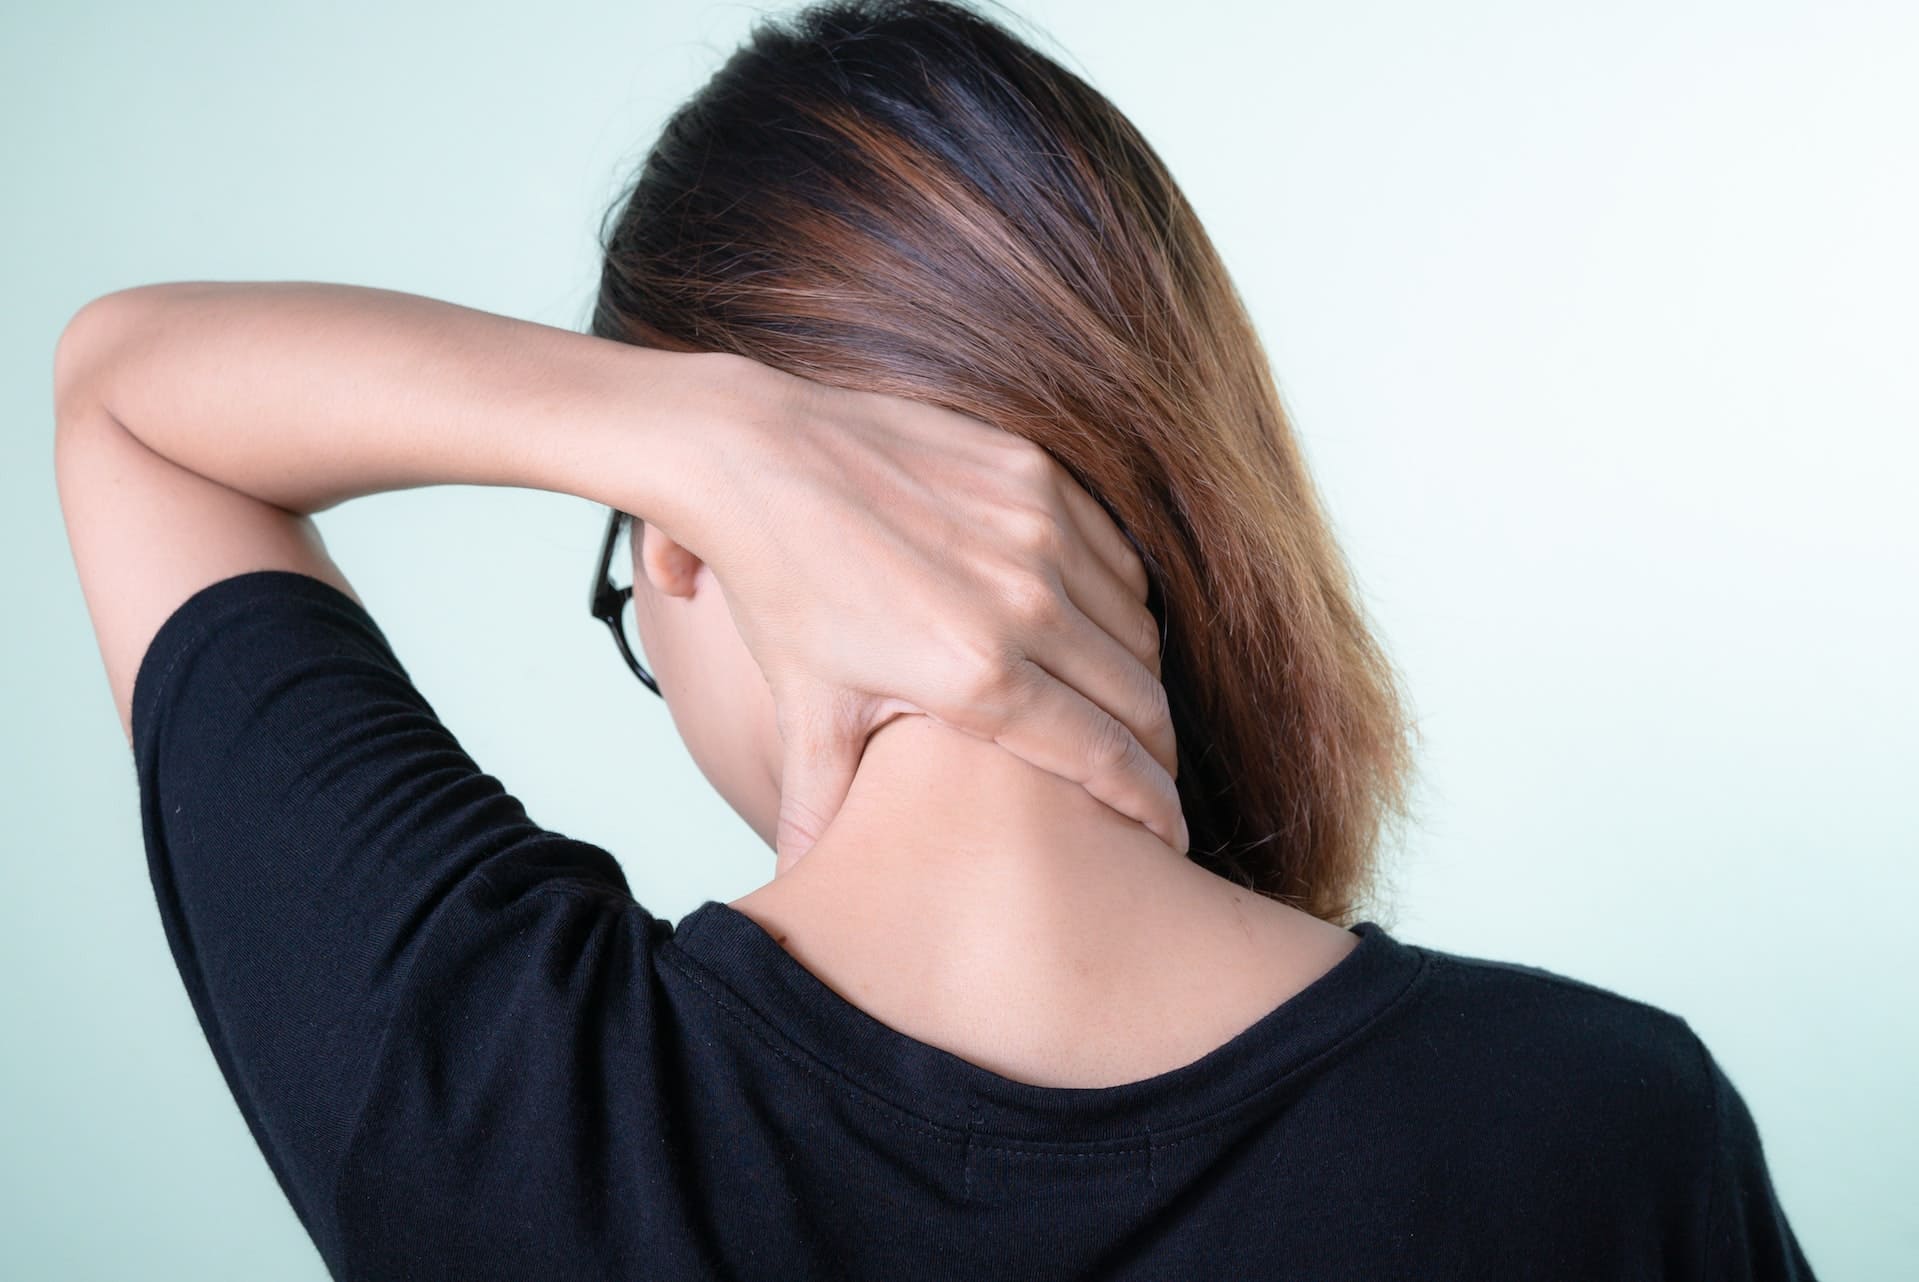 ¿Conoces los tipos de dolor de cuello?